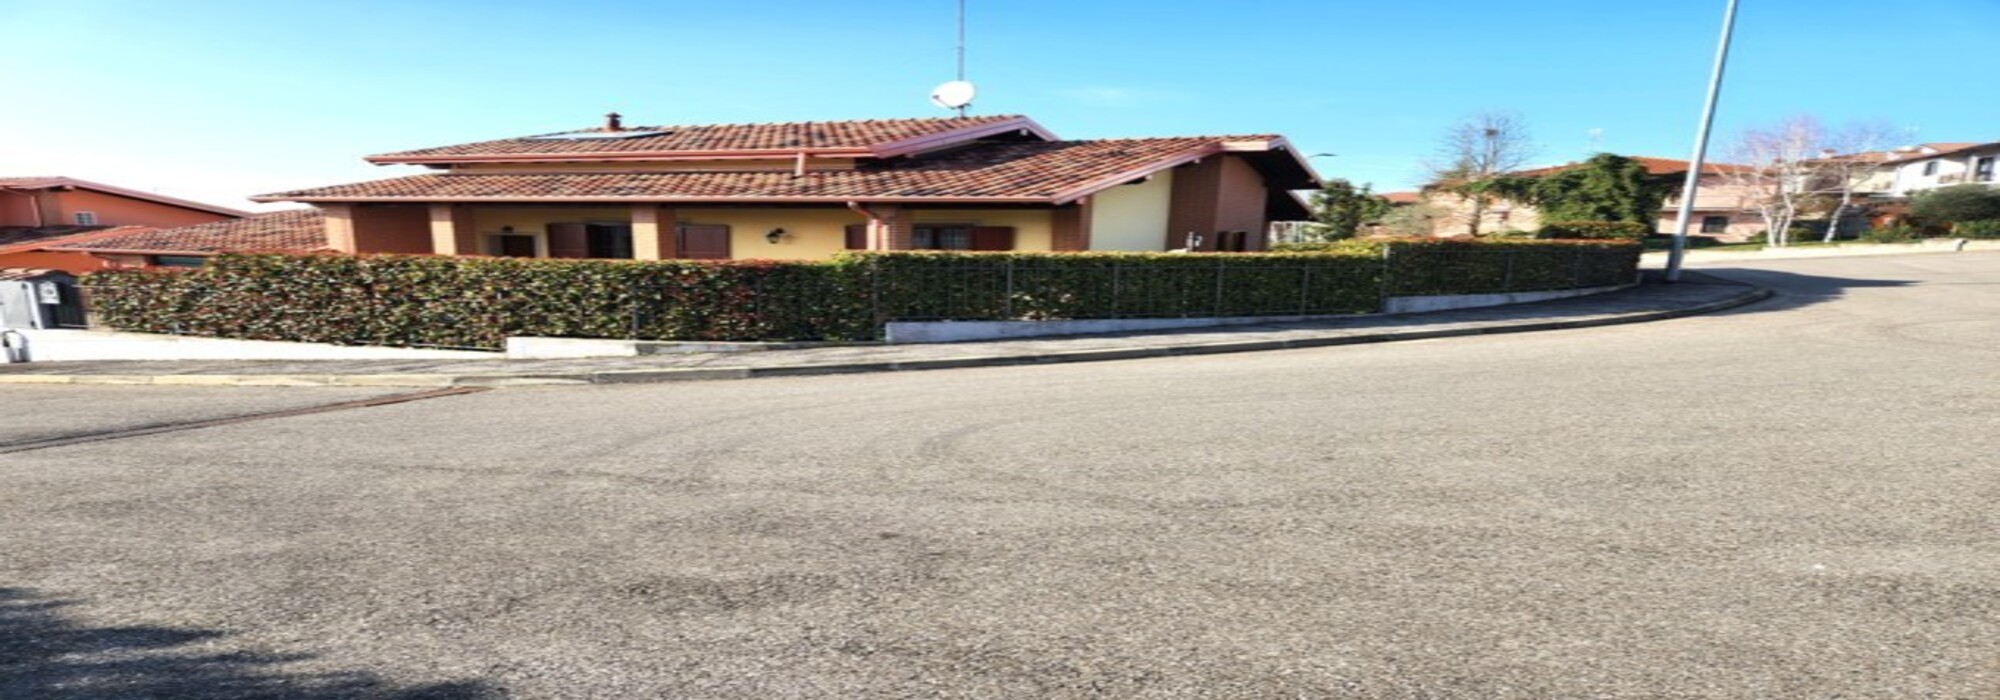 Casteggio (PV) VENDITA villa di recente costruzione in zona residenziale Rif.C436